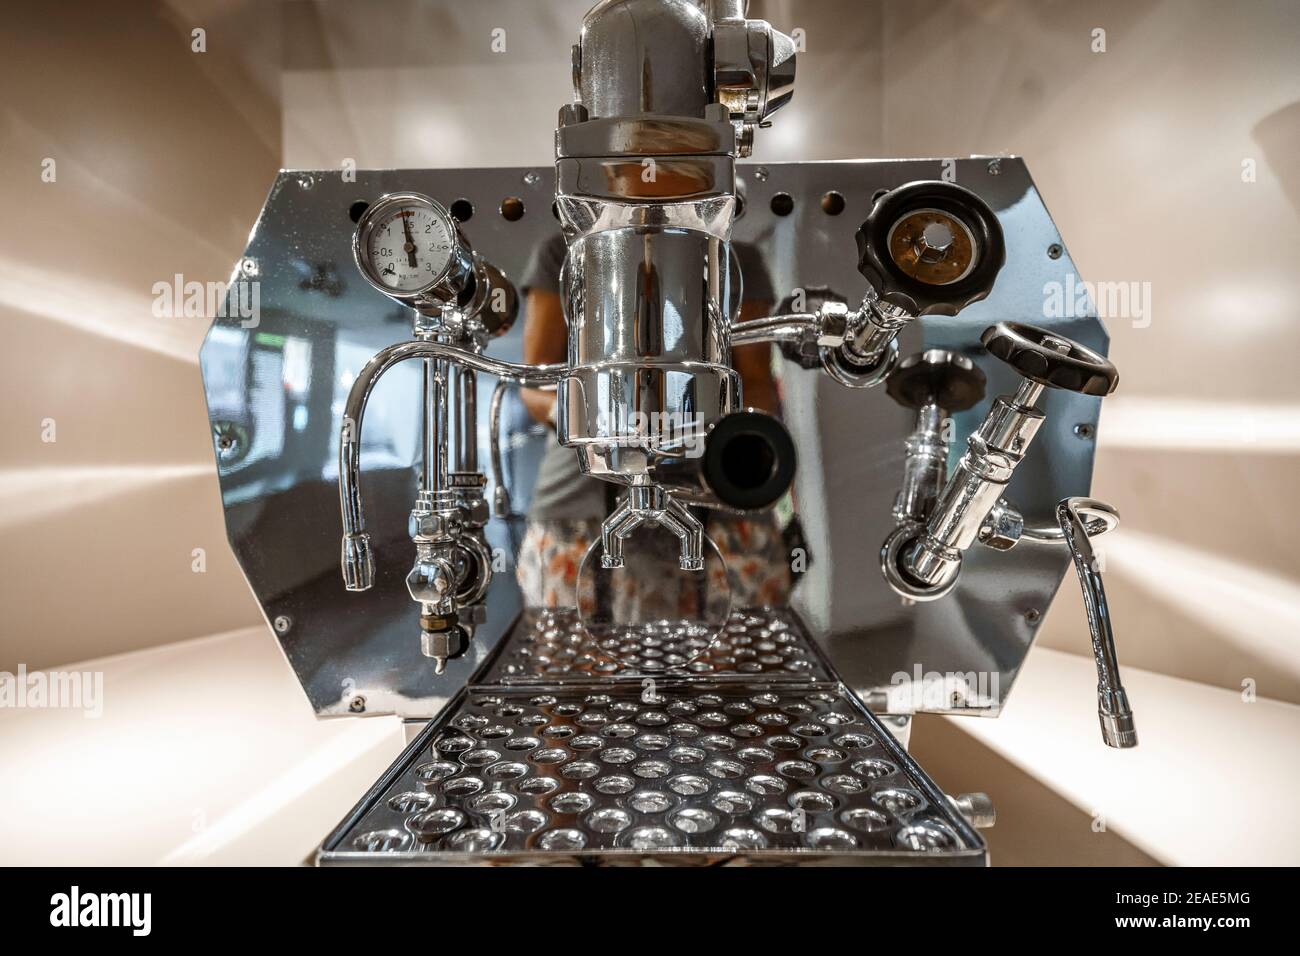 Gros plan sur une machine à café professionnelle d'époque Banque D'Images